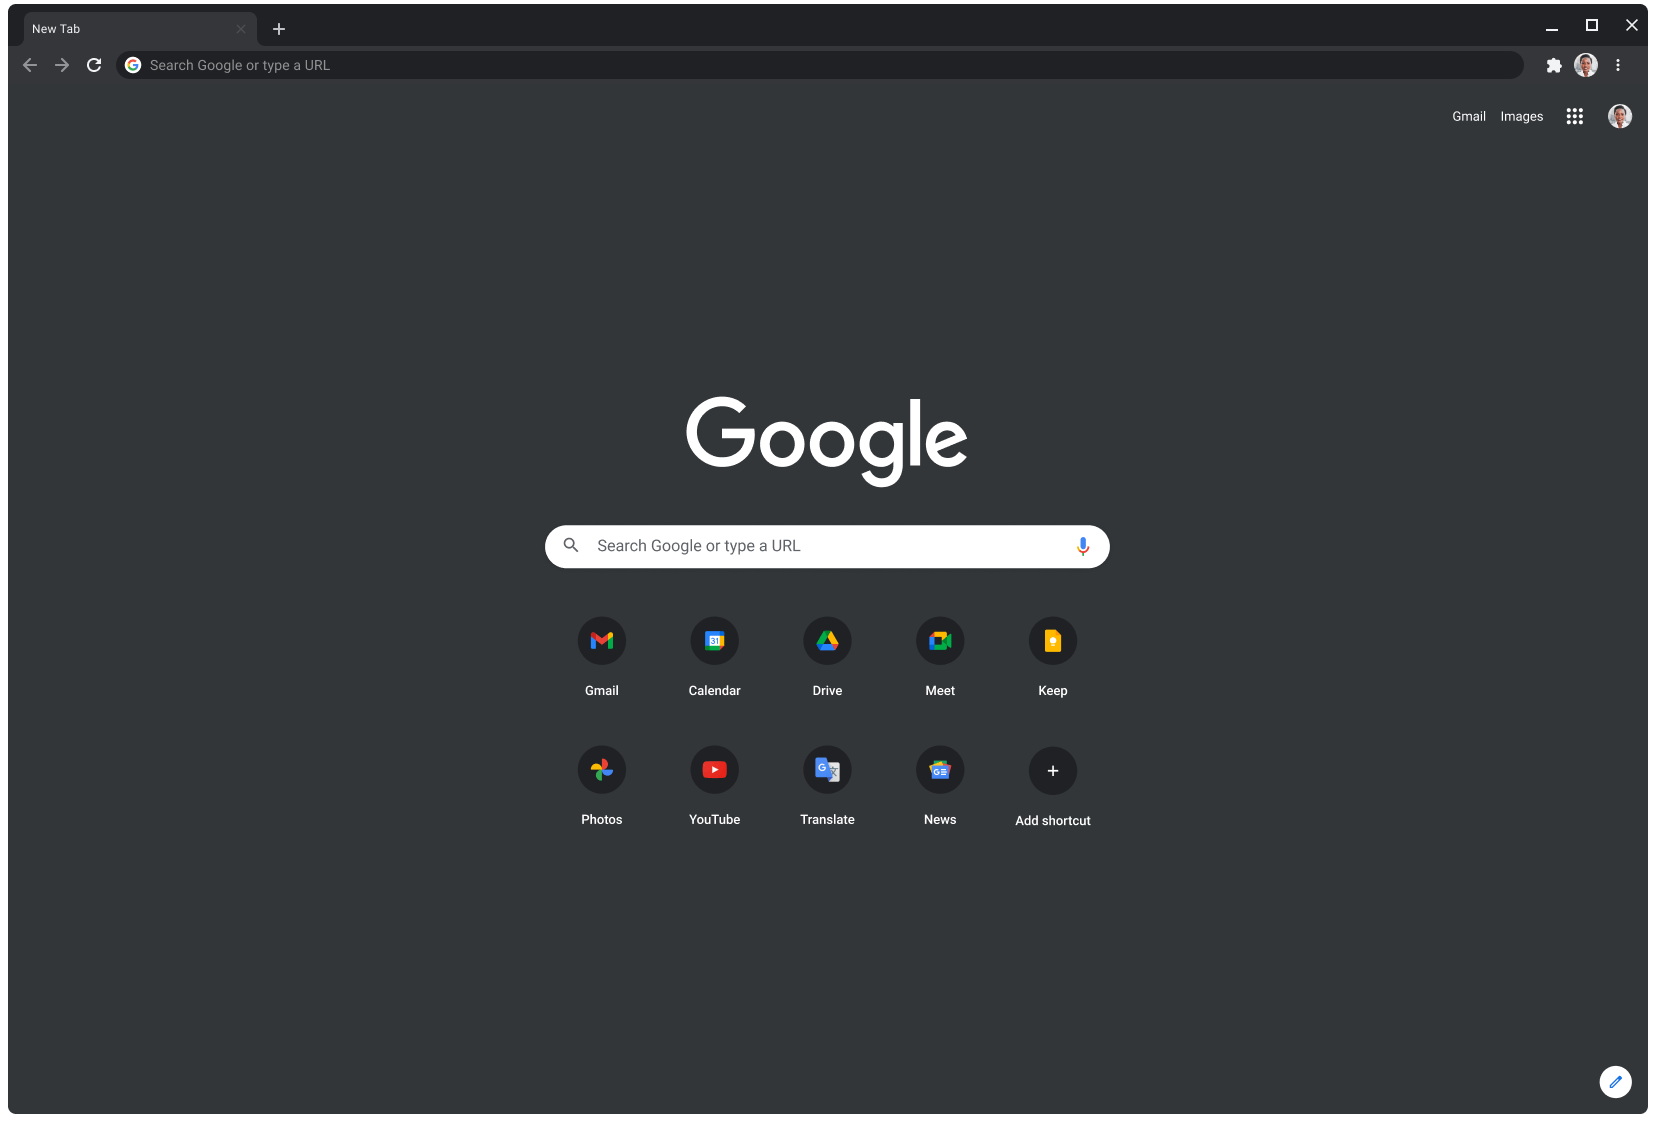 採用暗光模式的 Chrome 瀏覽器視窗中顯示 Google.com 網頁。